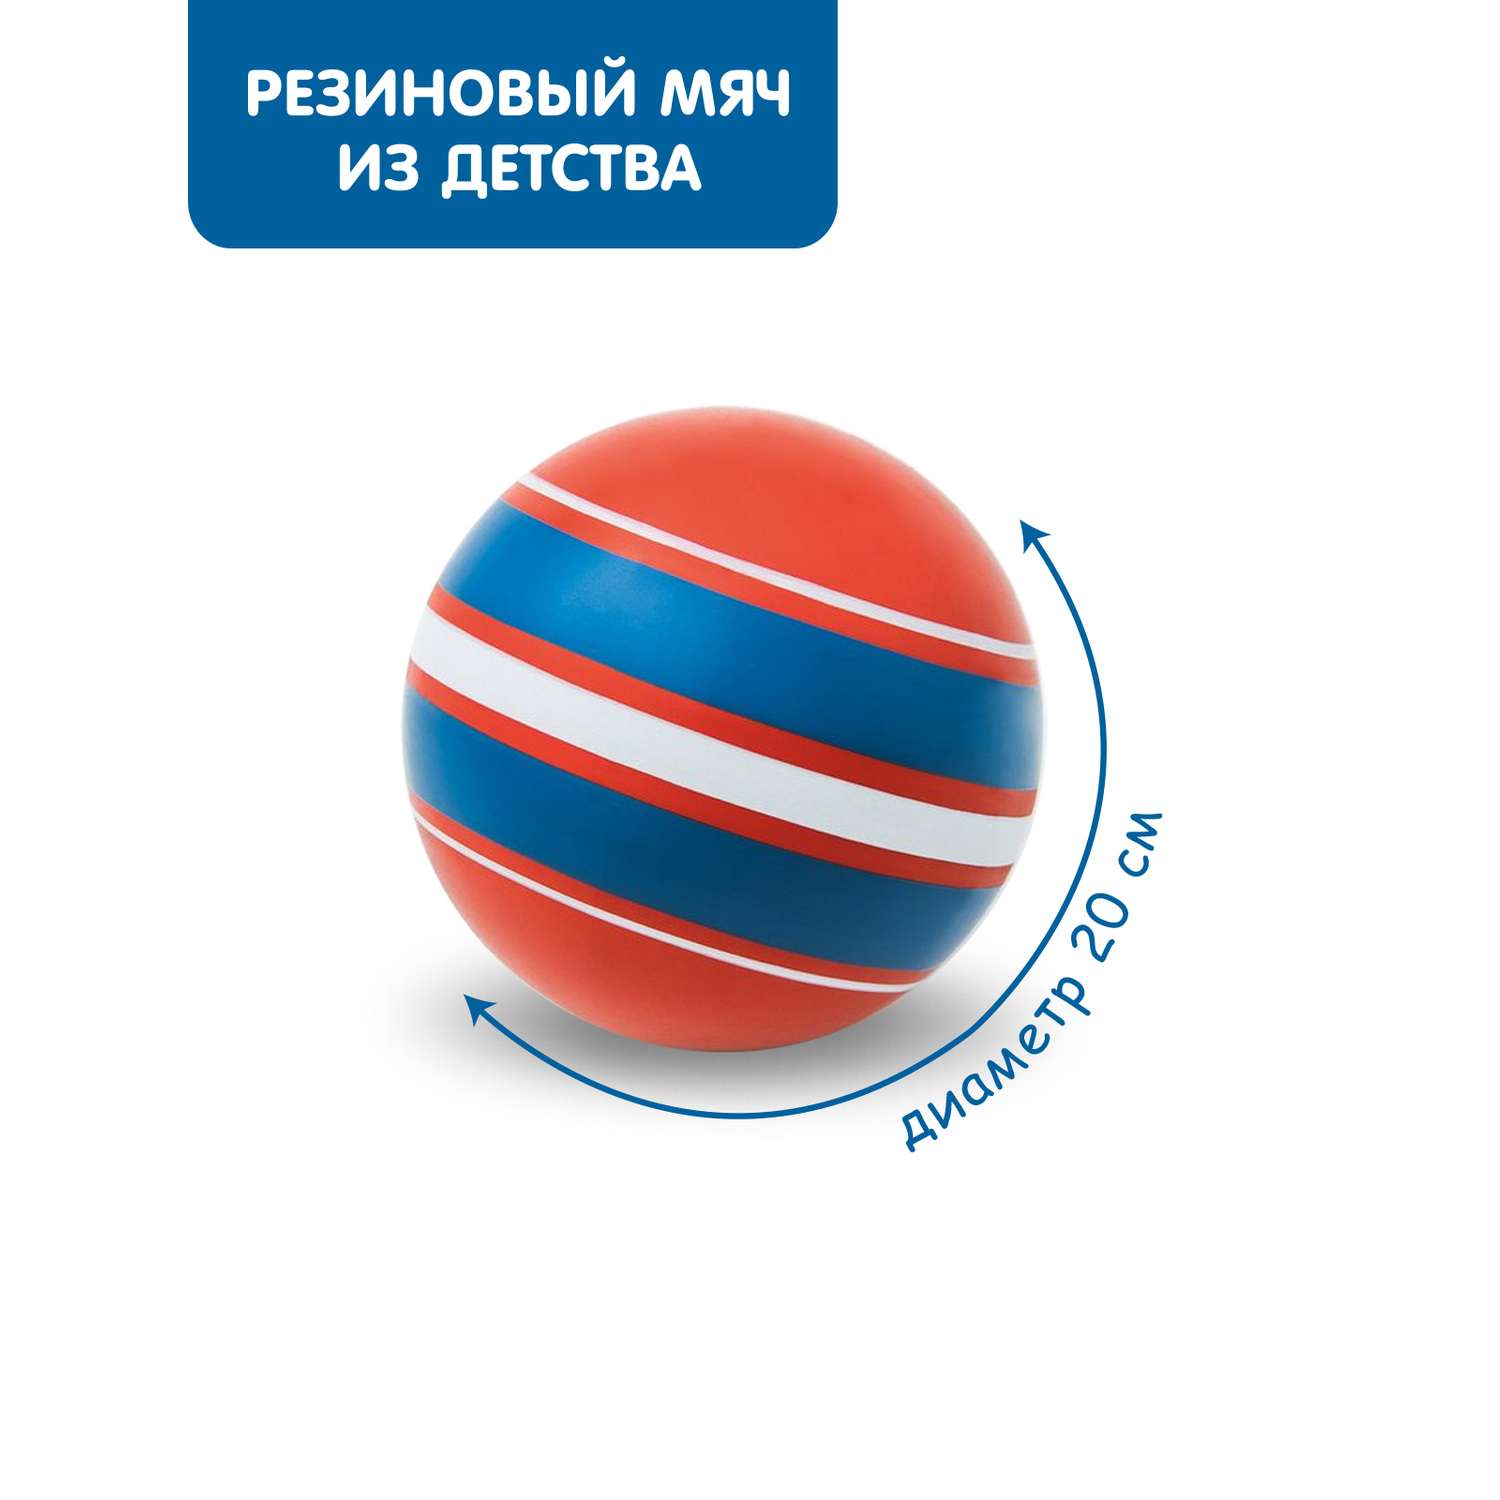 Мяч ЧАПАЕВ Ободок красная синяя полоса 200мм - фото 1